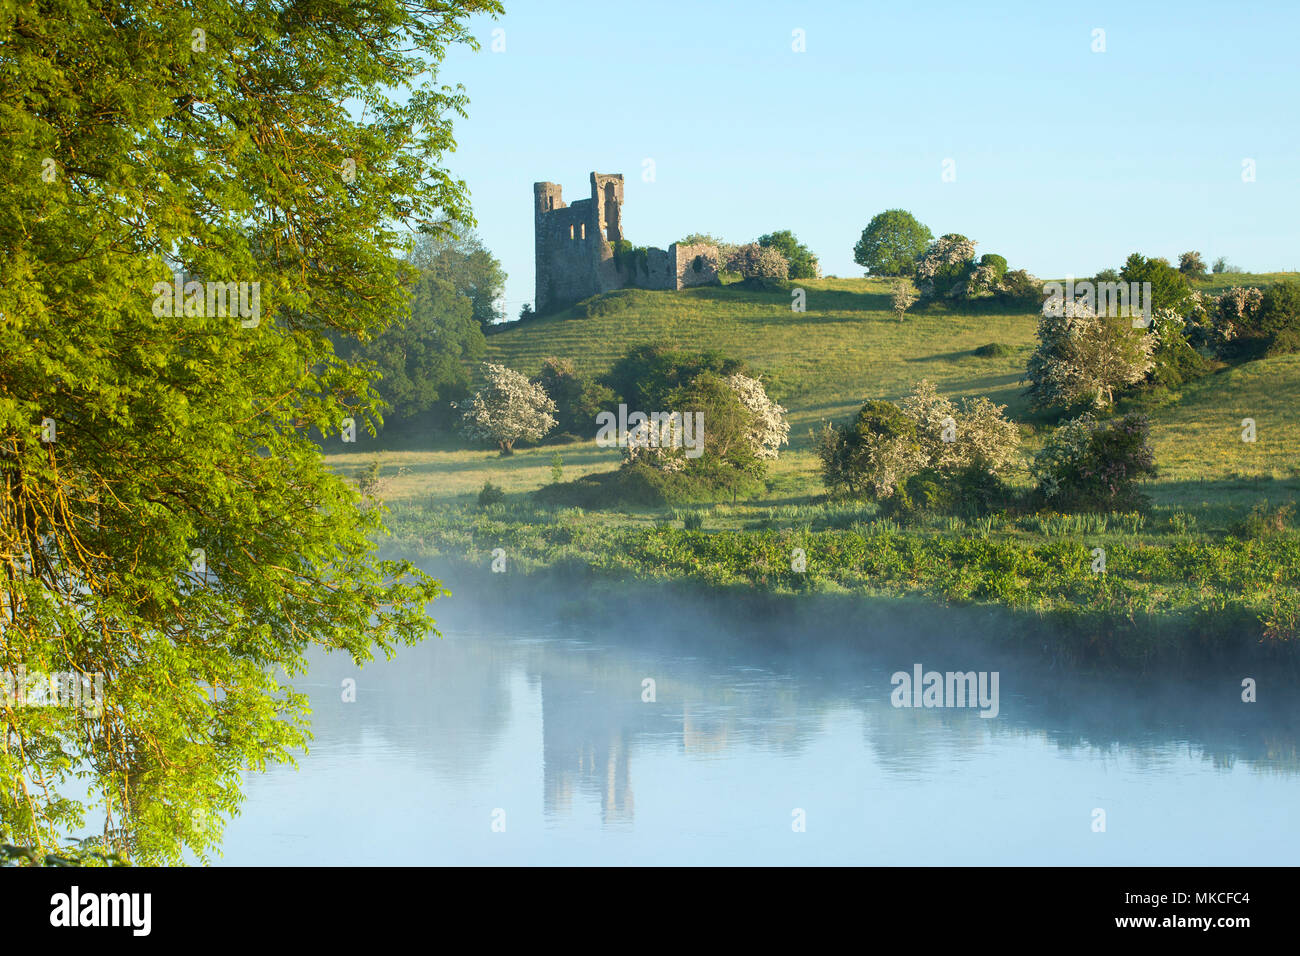 Châteaux irlandais - Château en ruine, Dunmoe château sur les rives de la Boyne, comté de Meath Irlande Banque D'Images